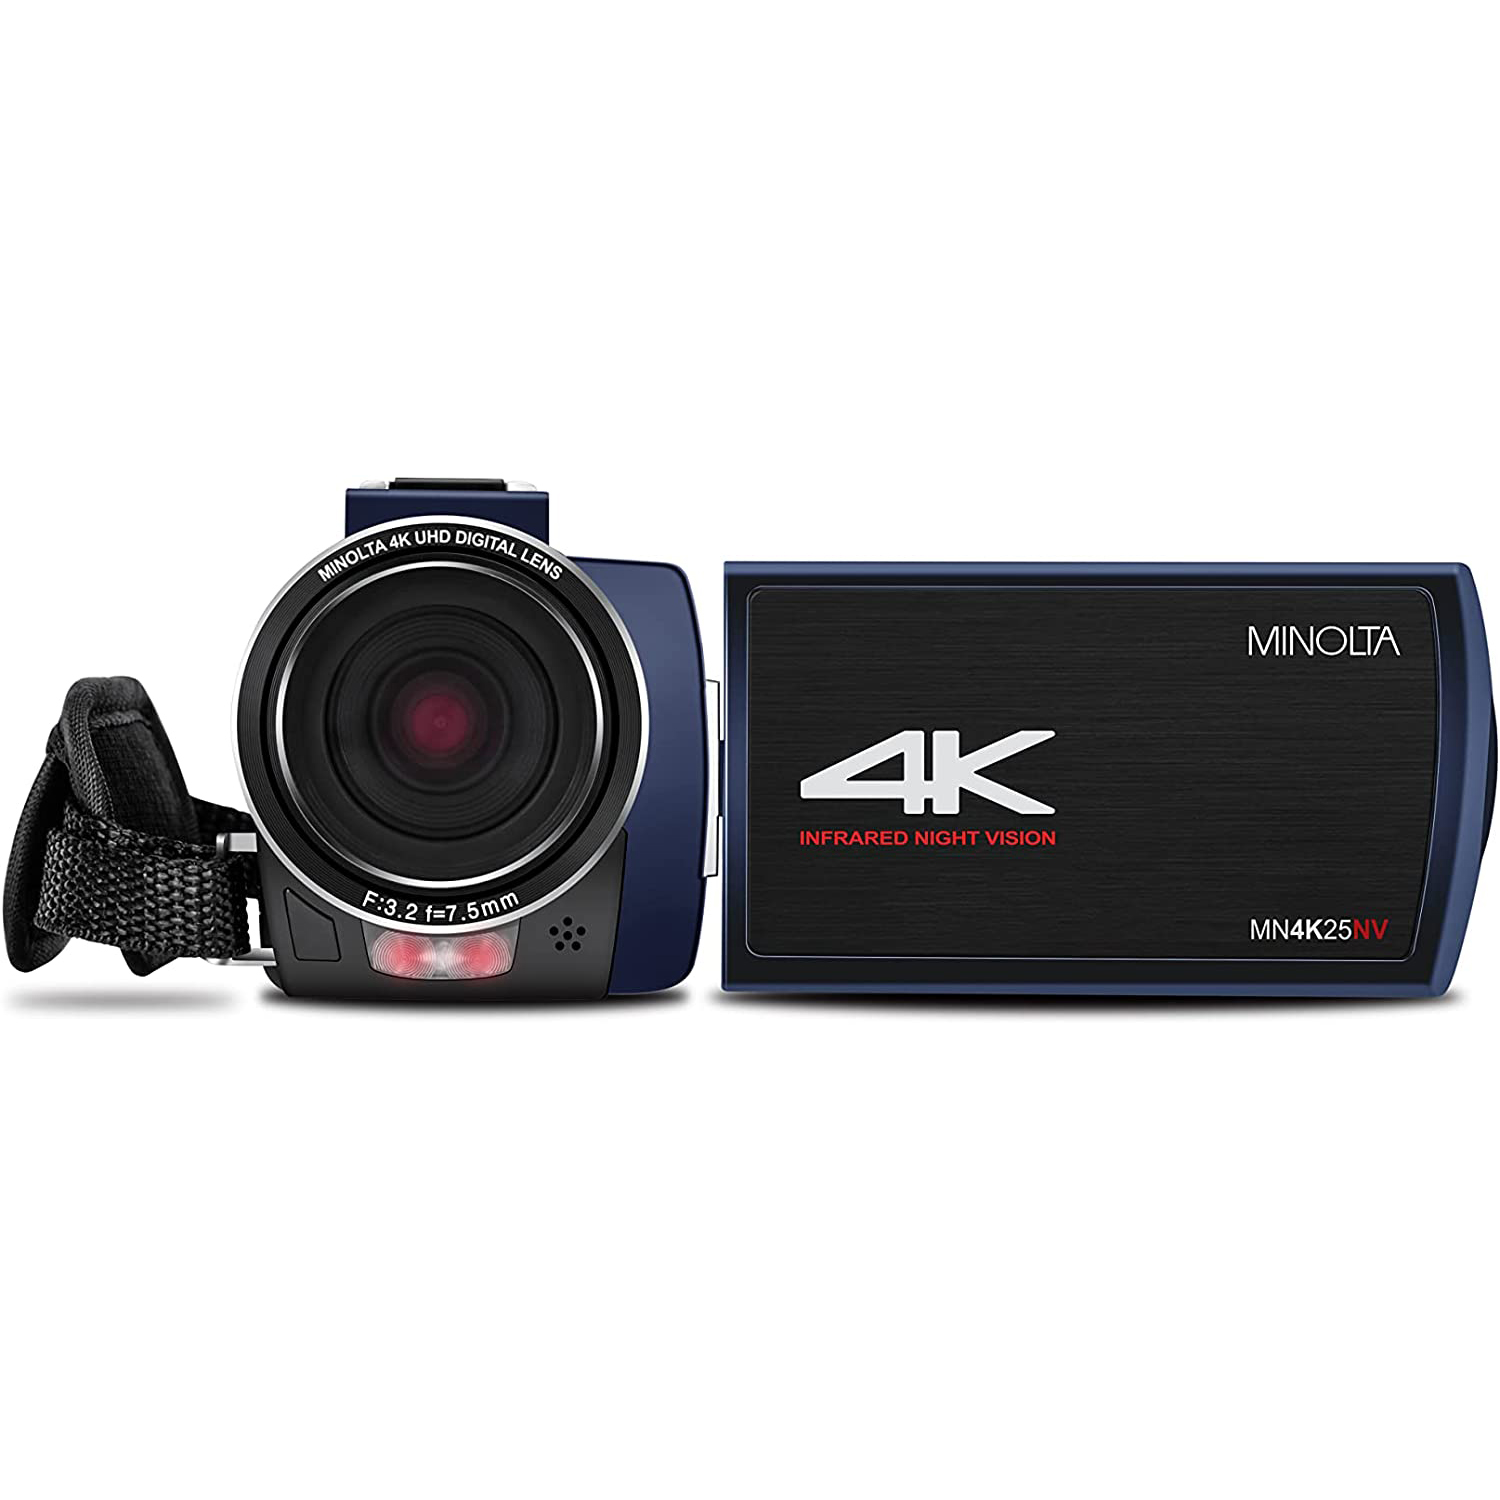 Photos - Camcorder Konica Minolta Minolta MN4K25NV 4K Ultra HD 30 MP Night Vision   MN4K25NV (Blue)